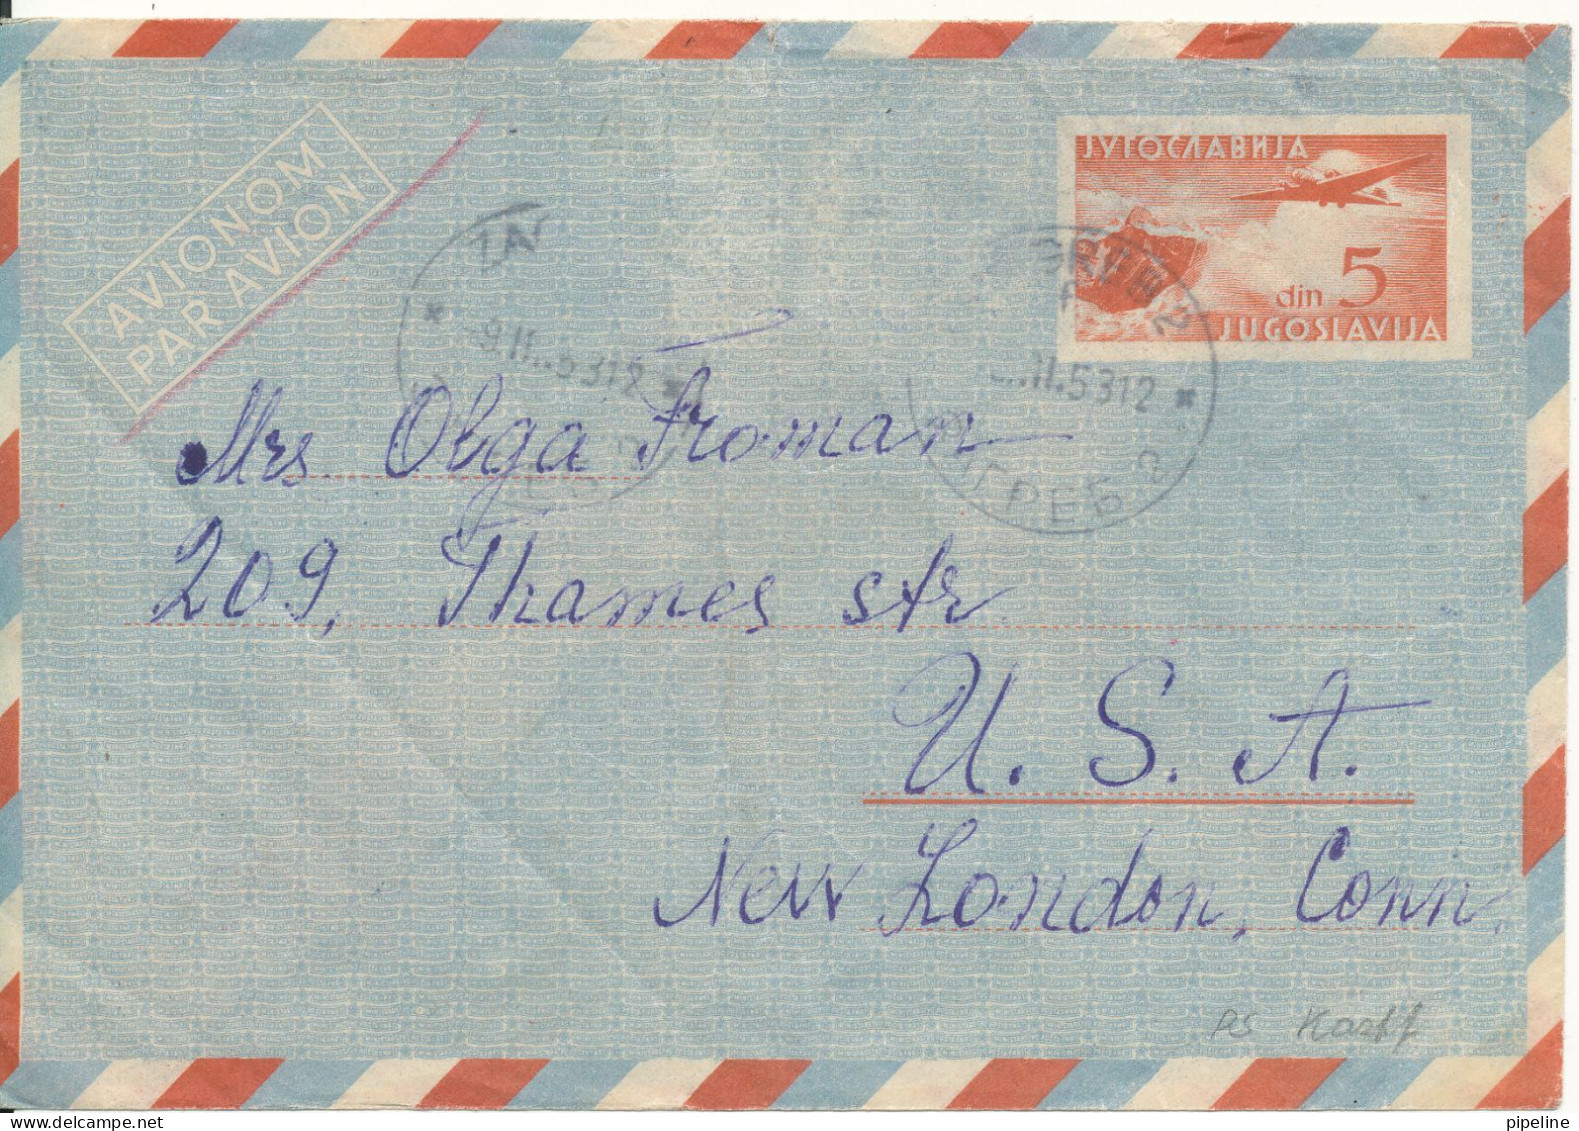 Yugoslavia Postal Stationery Cover Sent To USA Zagreb 9-11-1953 - Postal Stationery